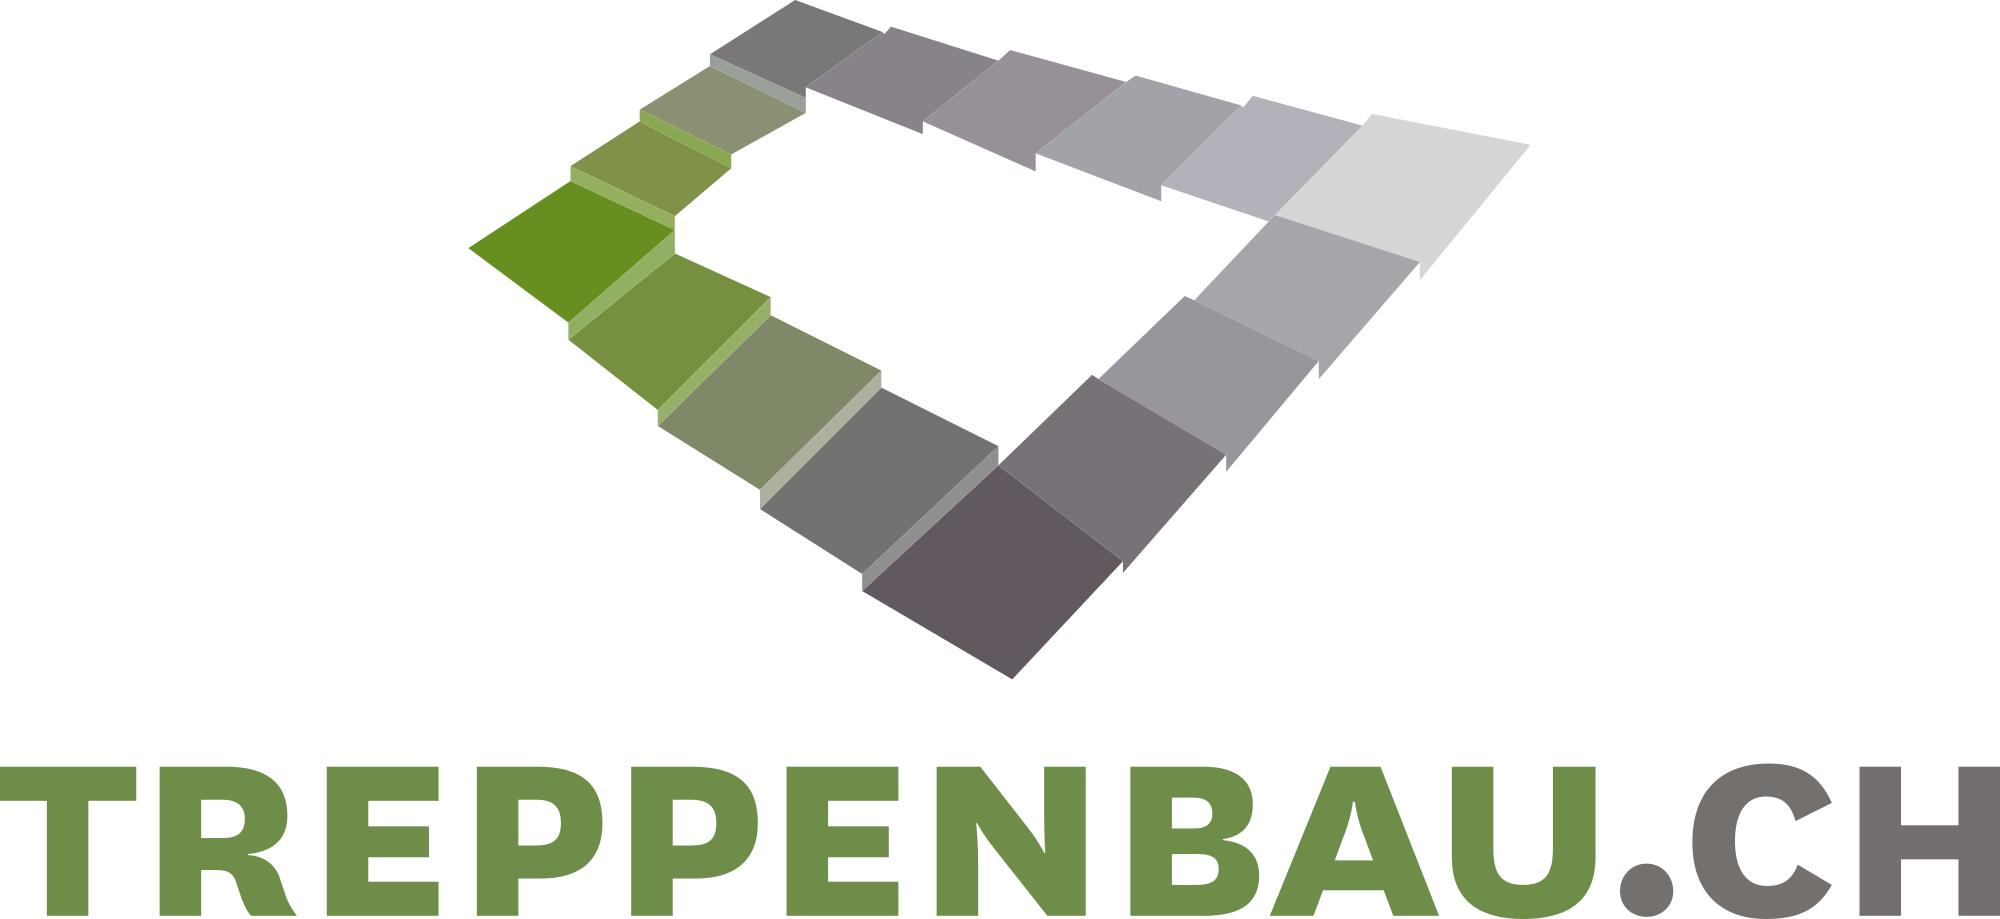 Treppenbau.ch Logo